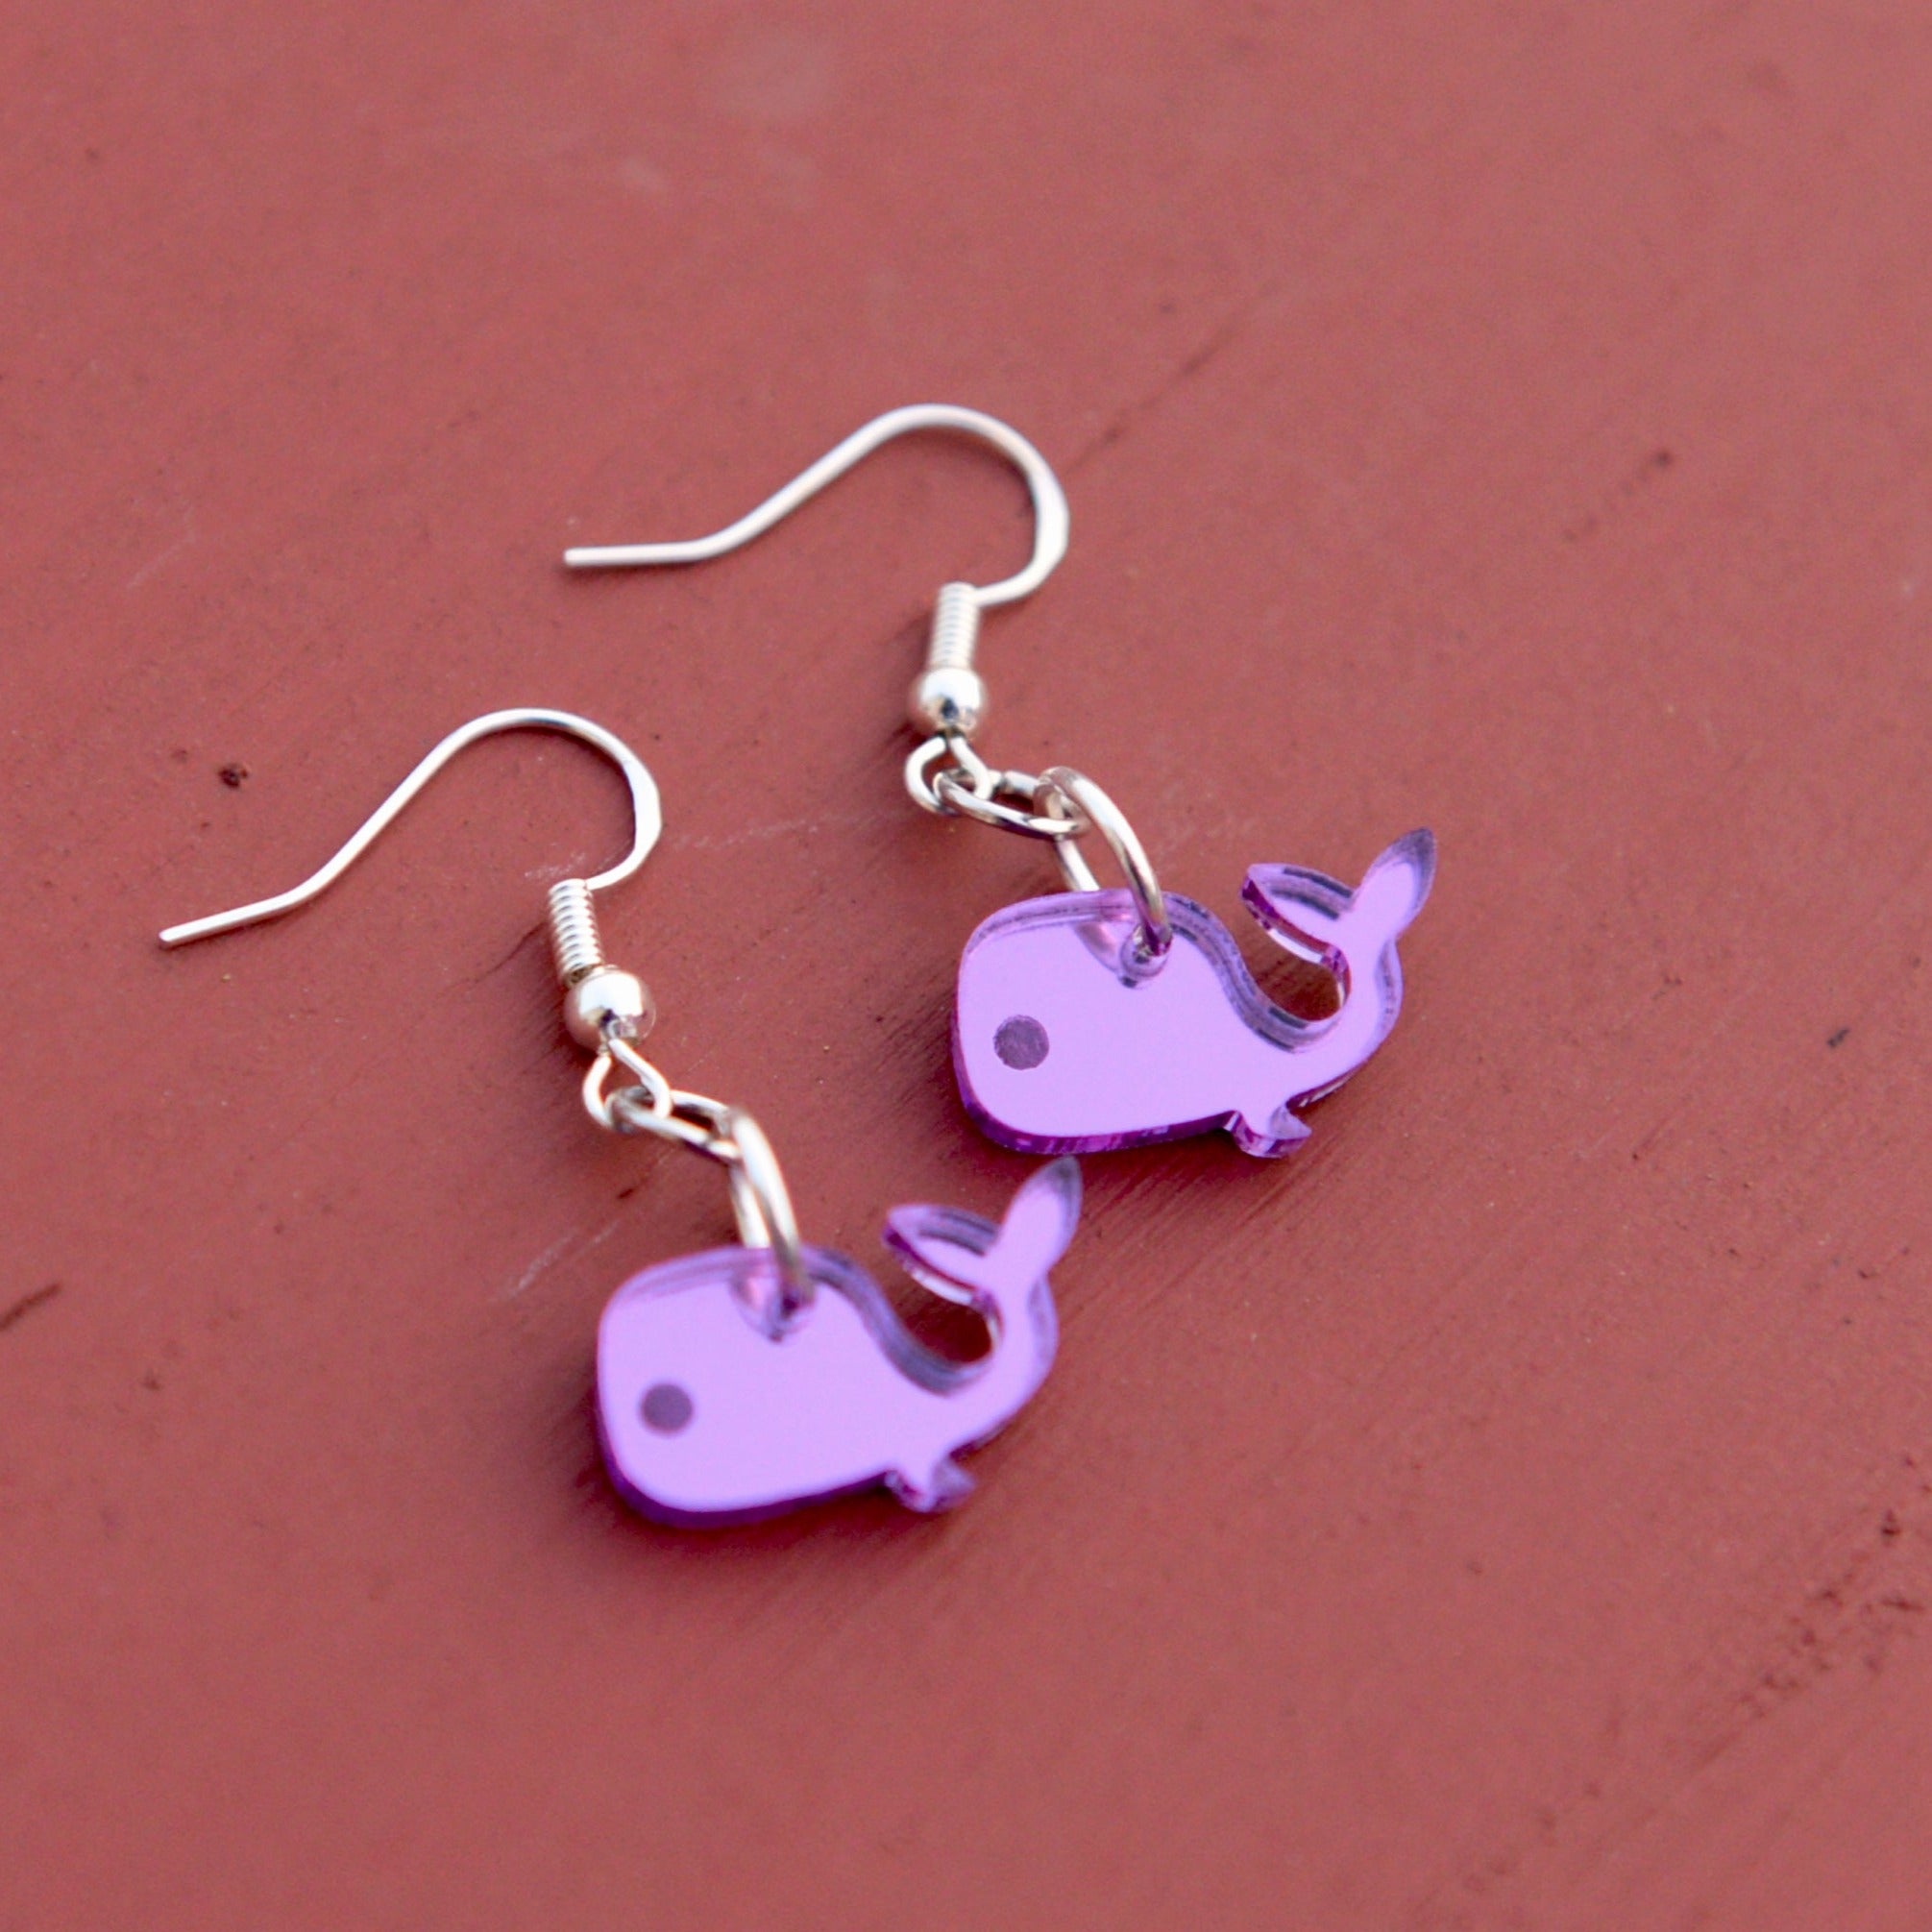 Whale dangle earrings